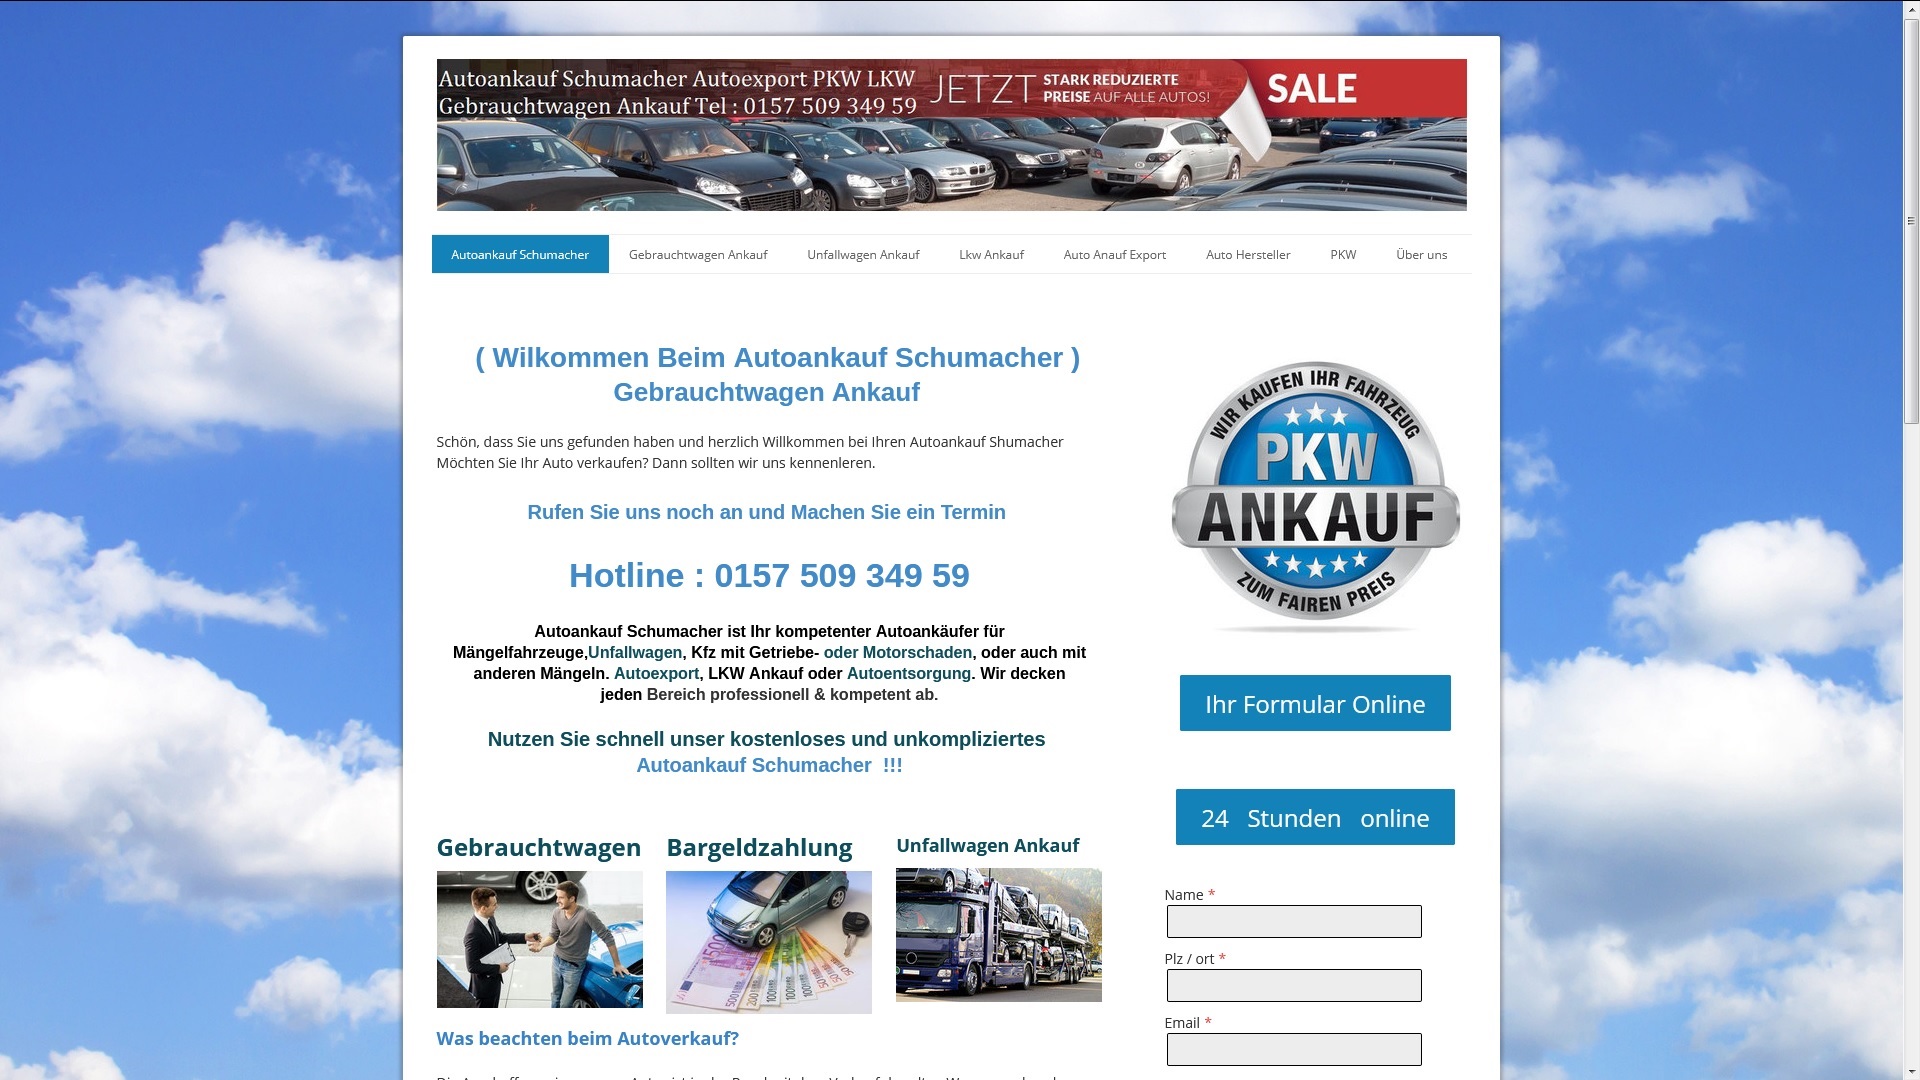 autoankauf rastatt kauft auch ihr unfallfahrzeug an fuer den export - Autoankauf Rastatt kauft auch ihr Unfallfahrzeug an für den Export